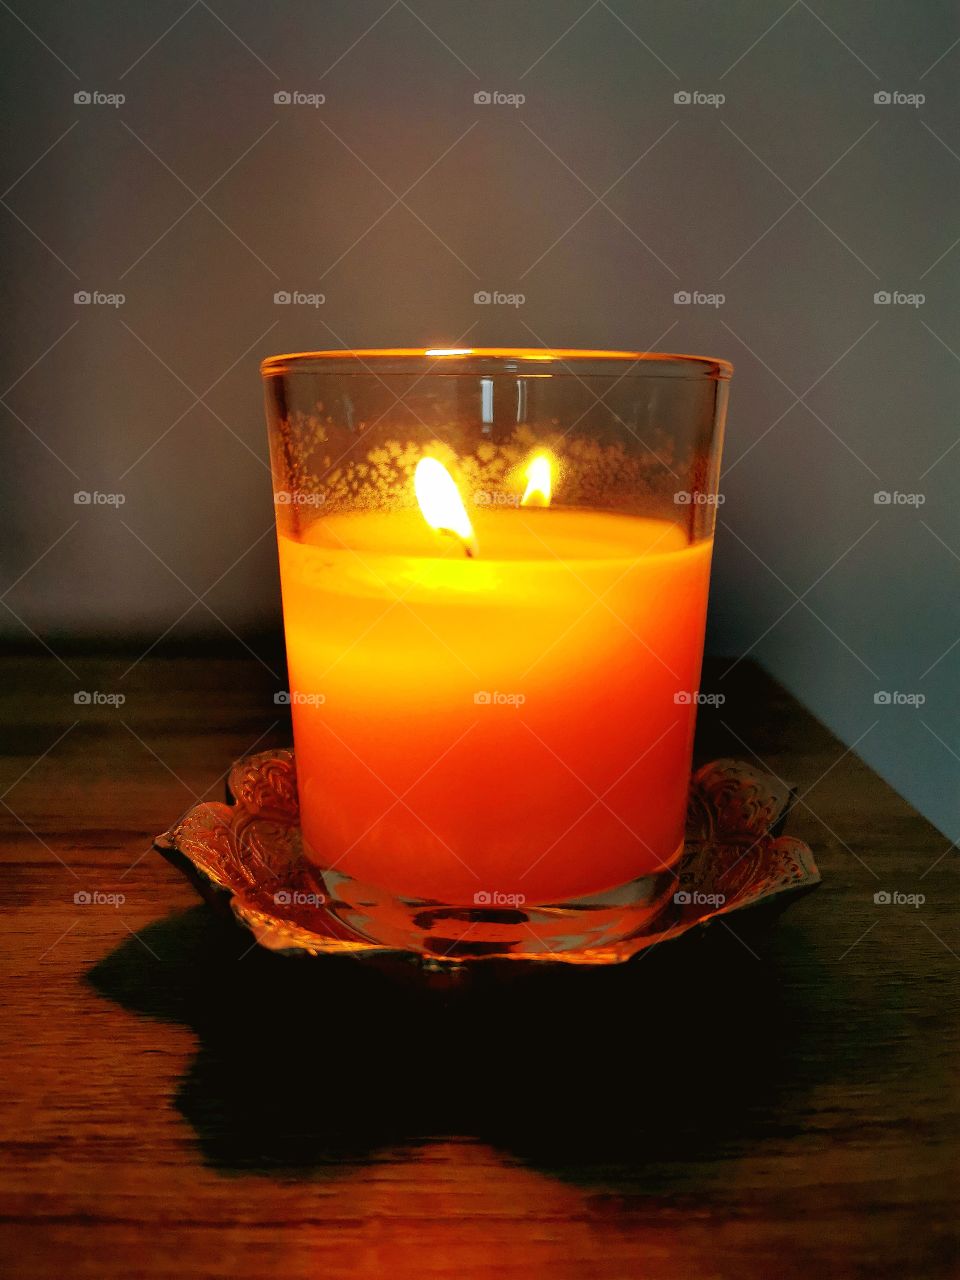 Imagen de una vela aromática con olor a vainilla que rememora un acontecimiento señalado.